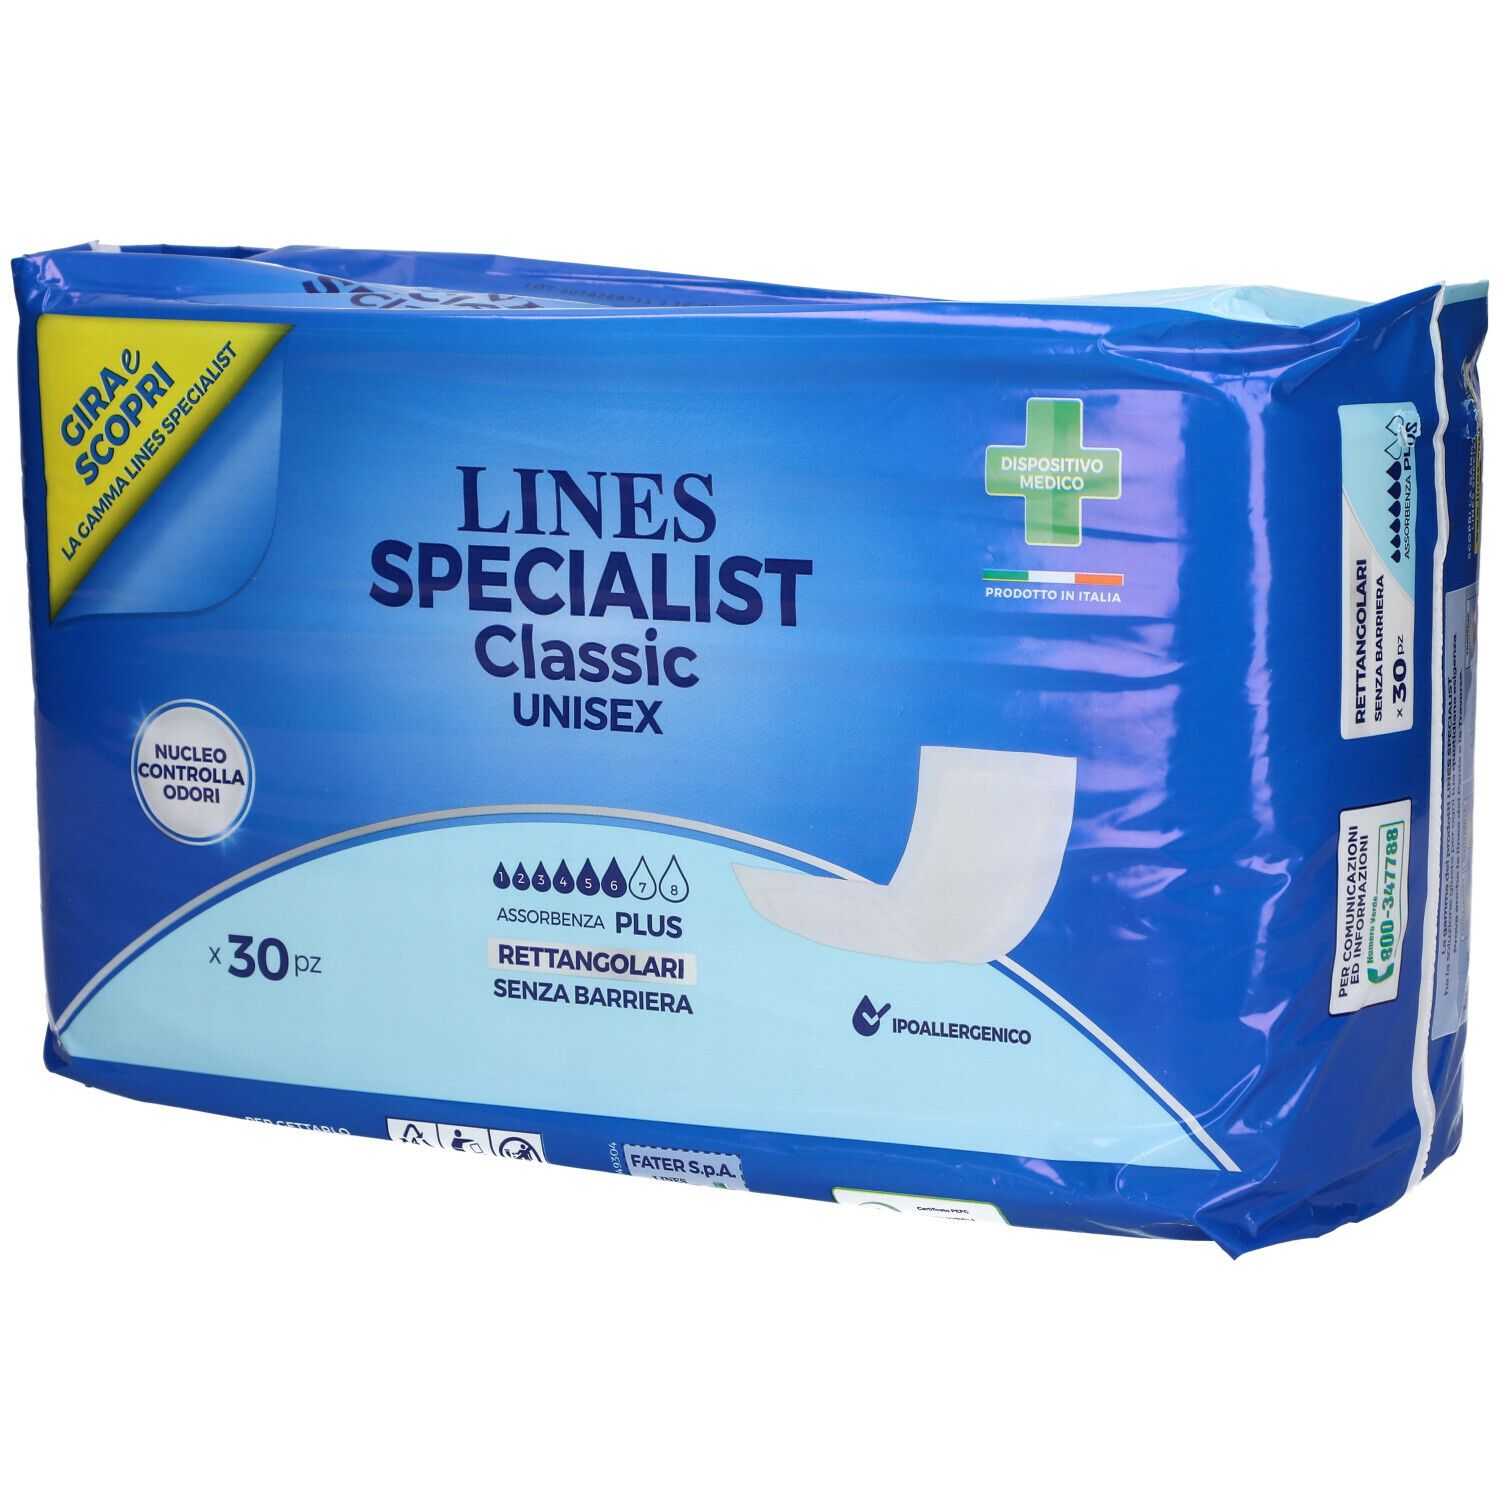 LINES Specialist Classic Unisex Rettangolari